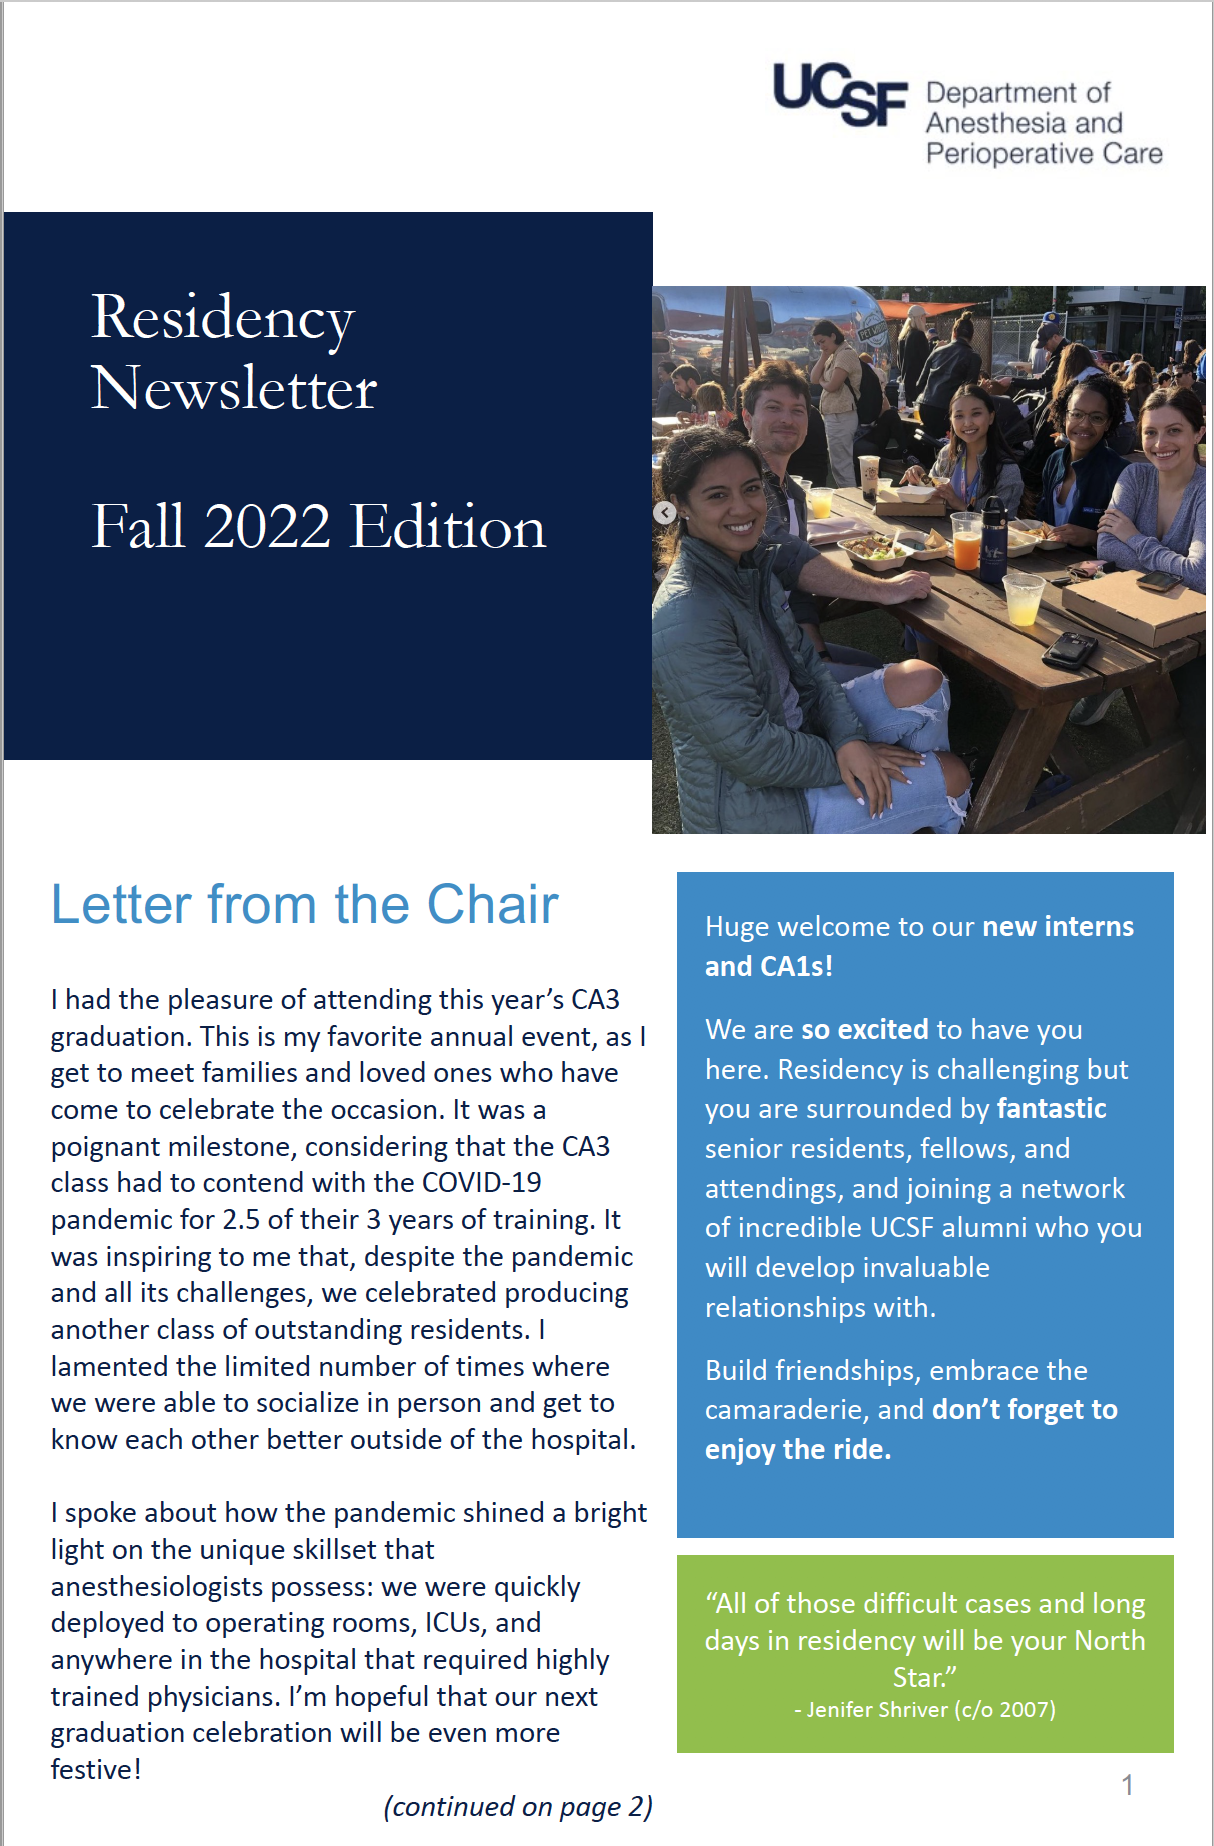 Residency Newsletter, Fall 2022